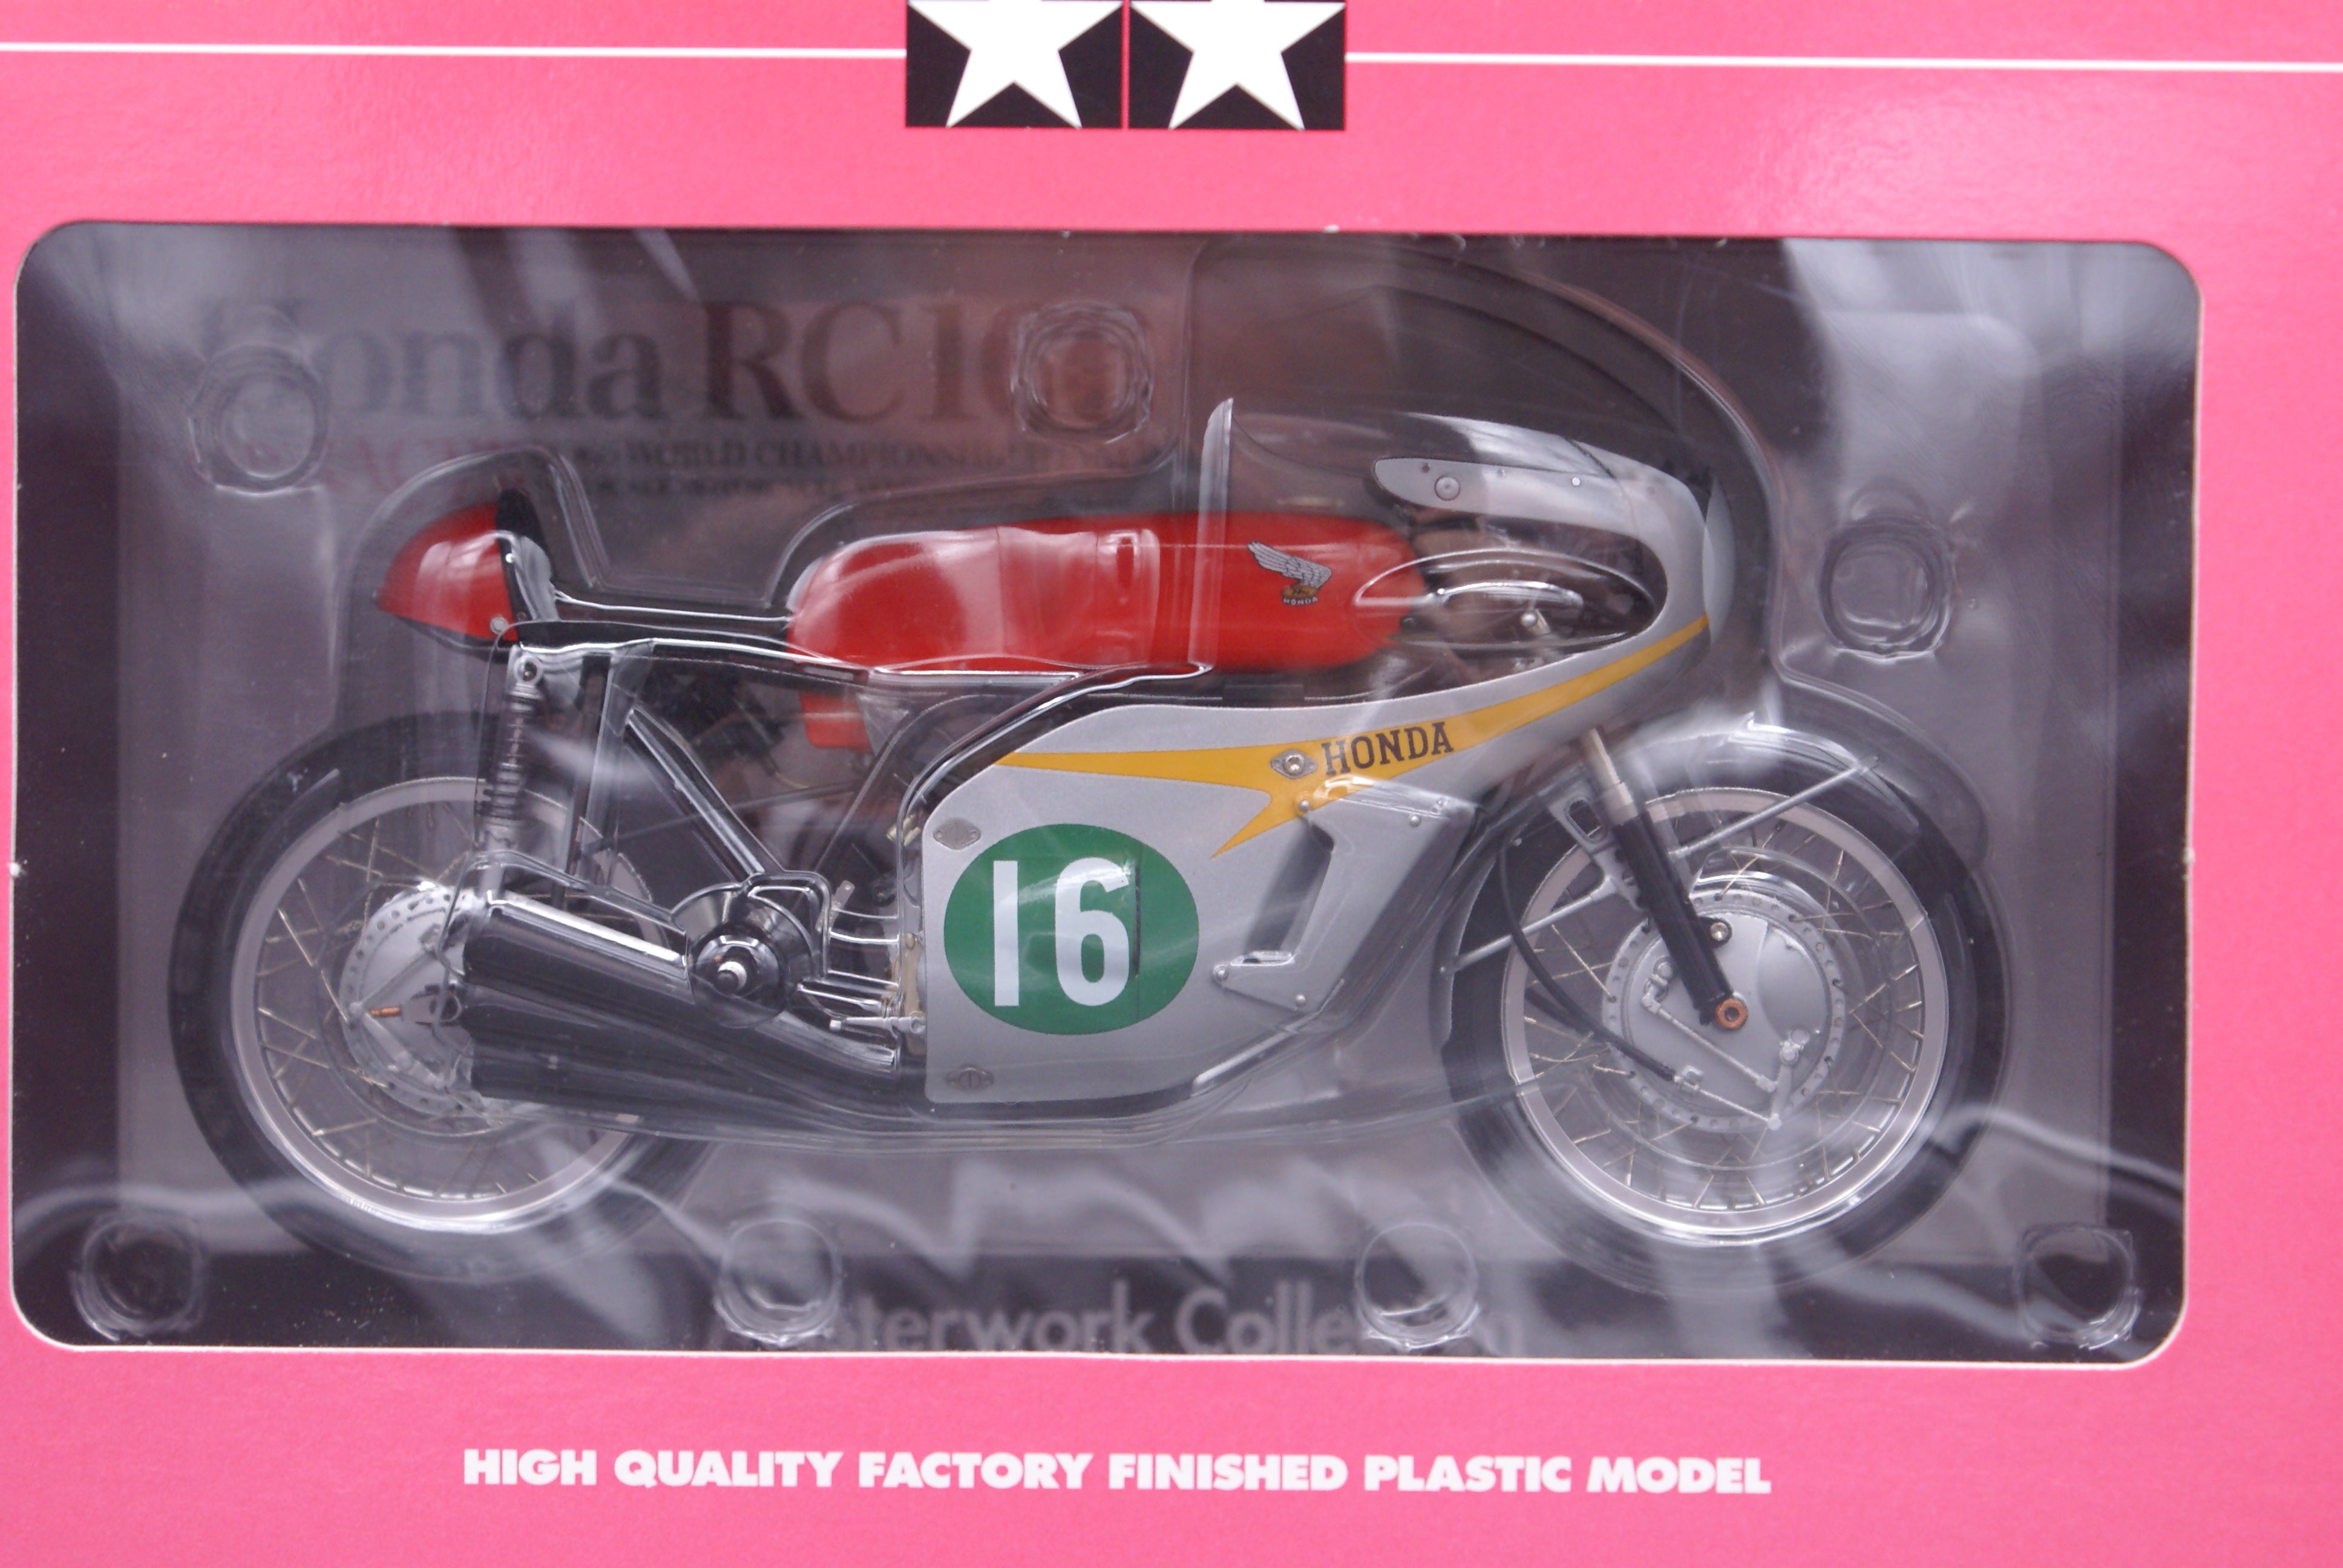 Honda RC166 Model